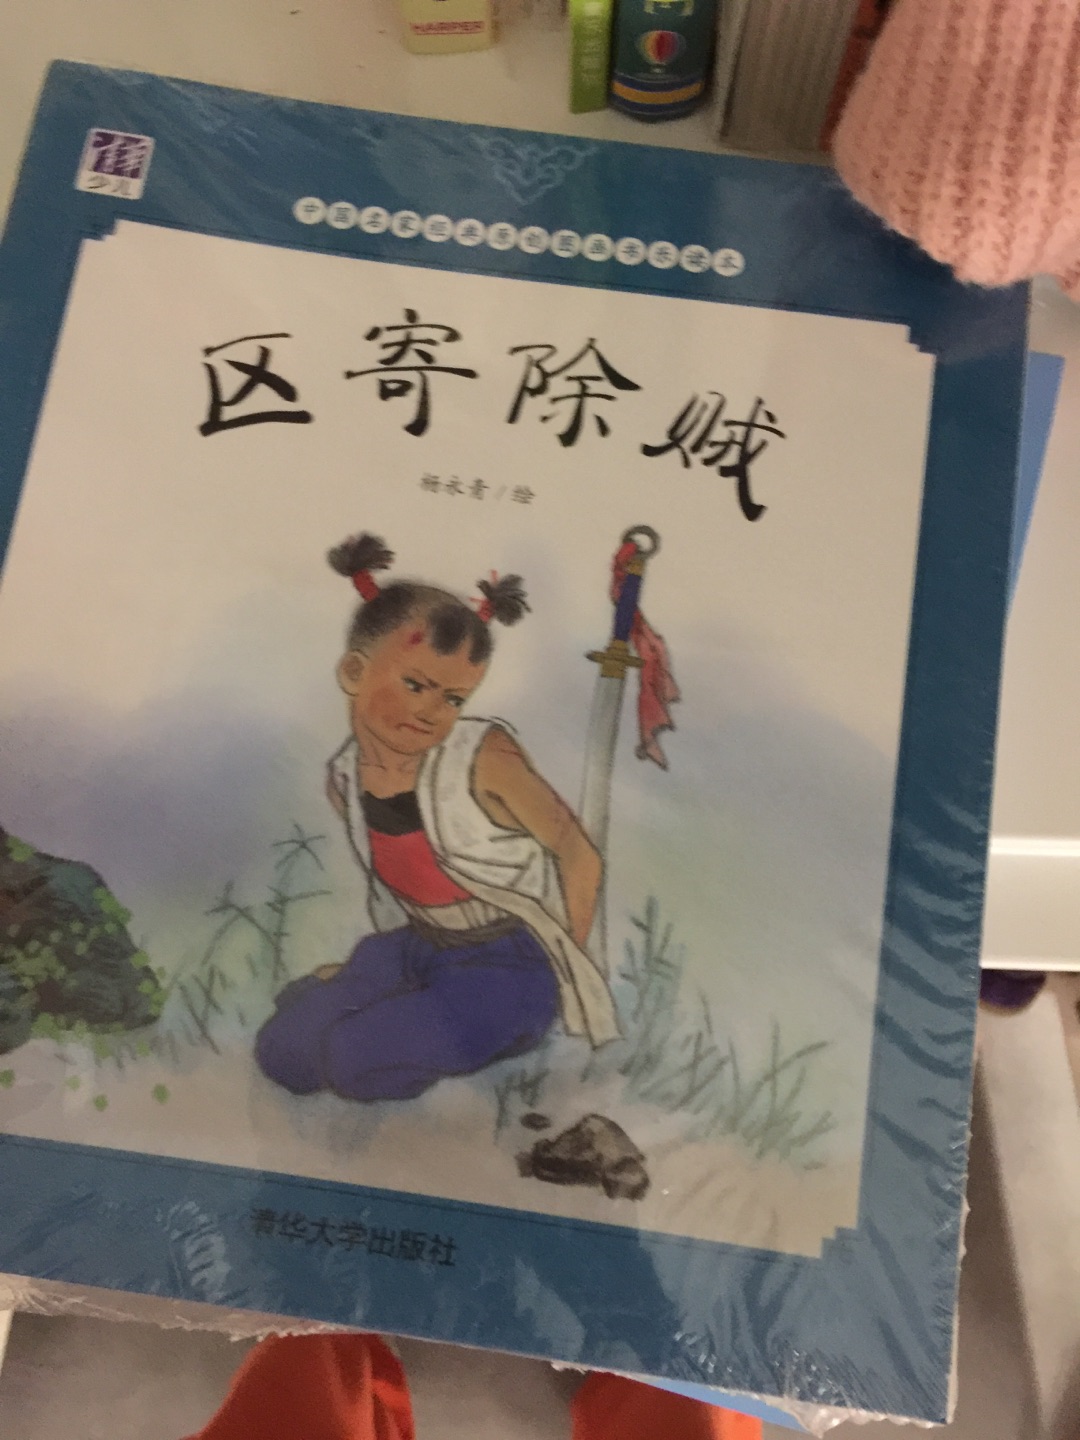 希望中国童书能发展起来 中国童书的概念总是很多 但总是不够好 孩子要学习的是文化 不是概念 童书作者要认真思考时代的需求